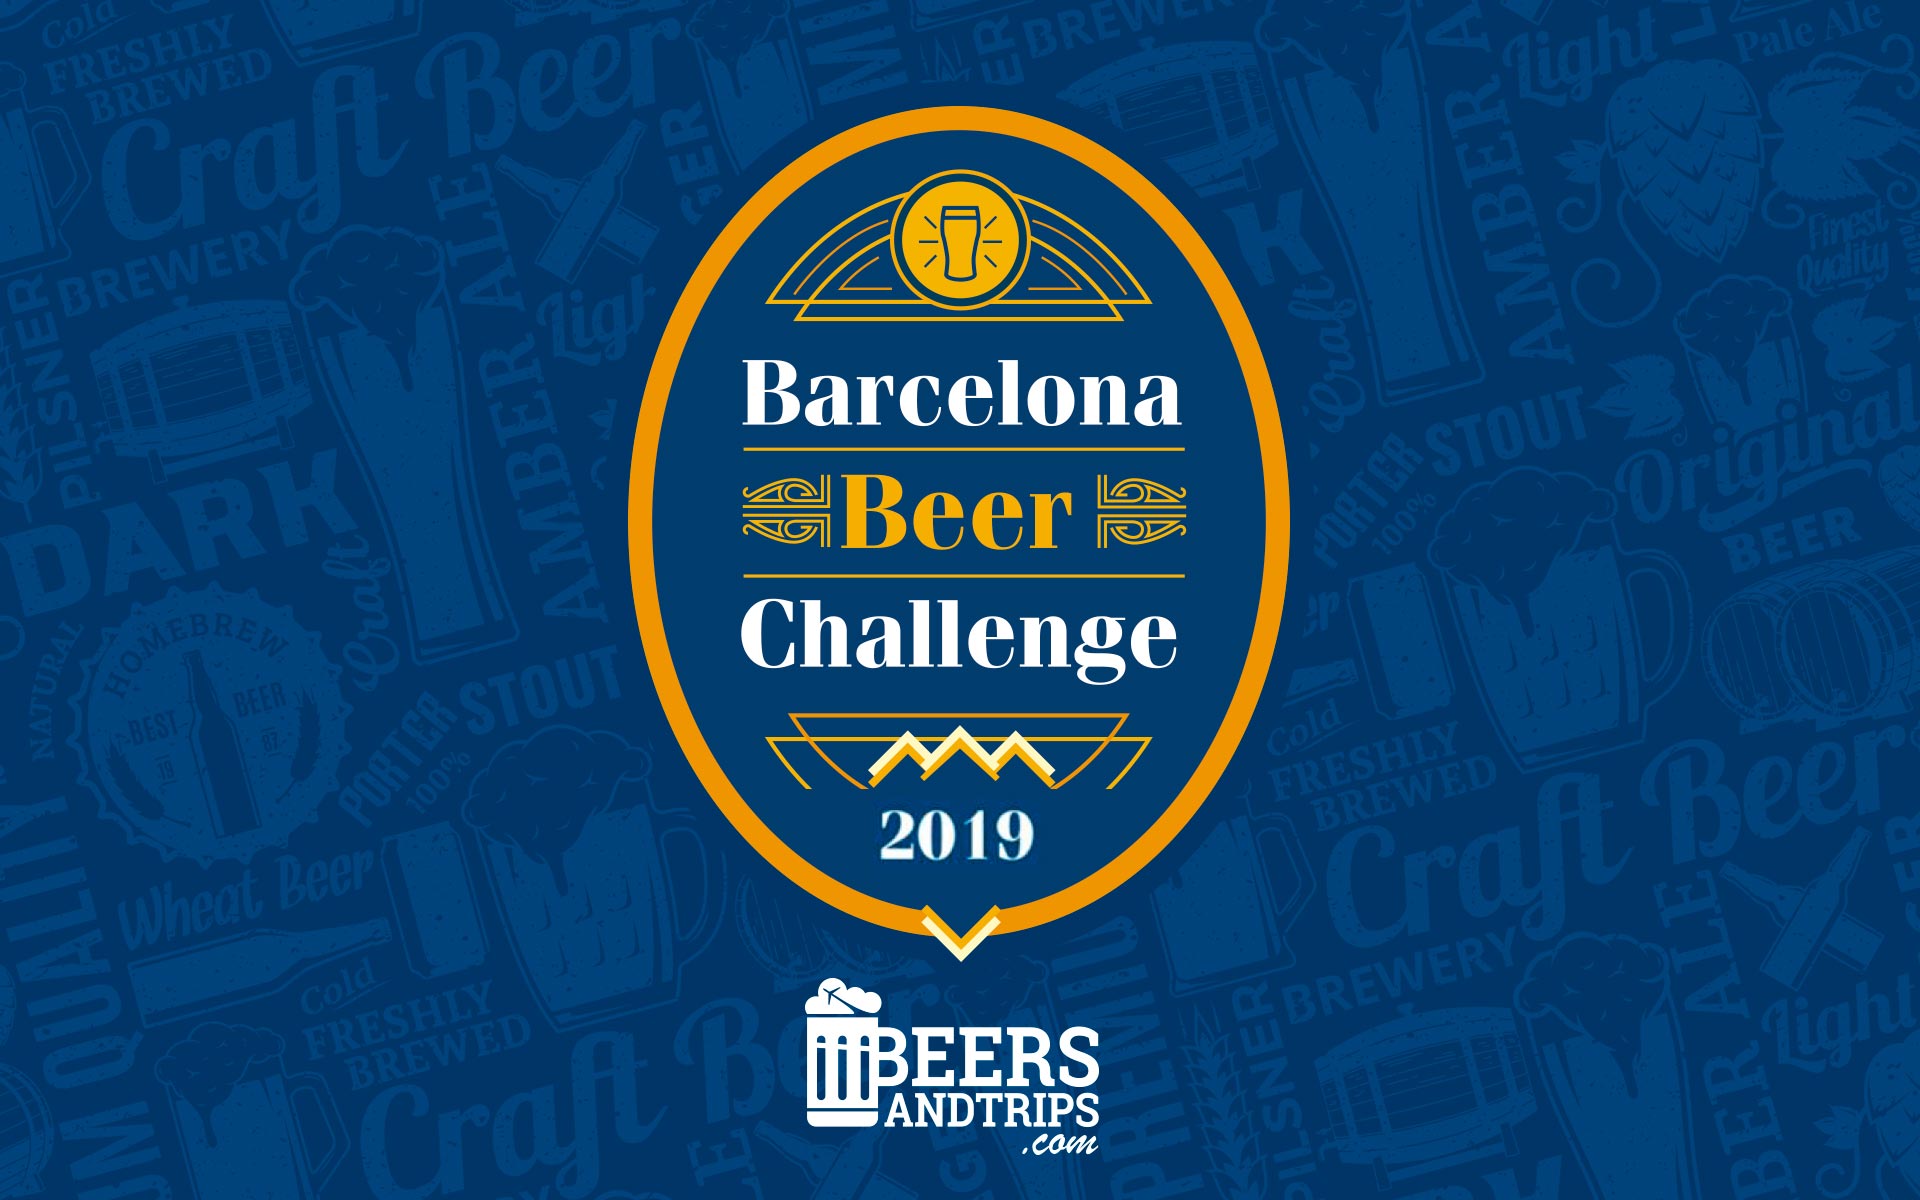 Beer challenge. Пивной фестиваль Барселона. Бир ЧЕЛЛЕНДЖ. Пиво Барселона.